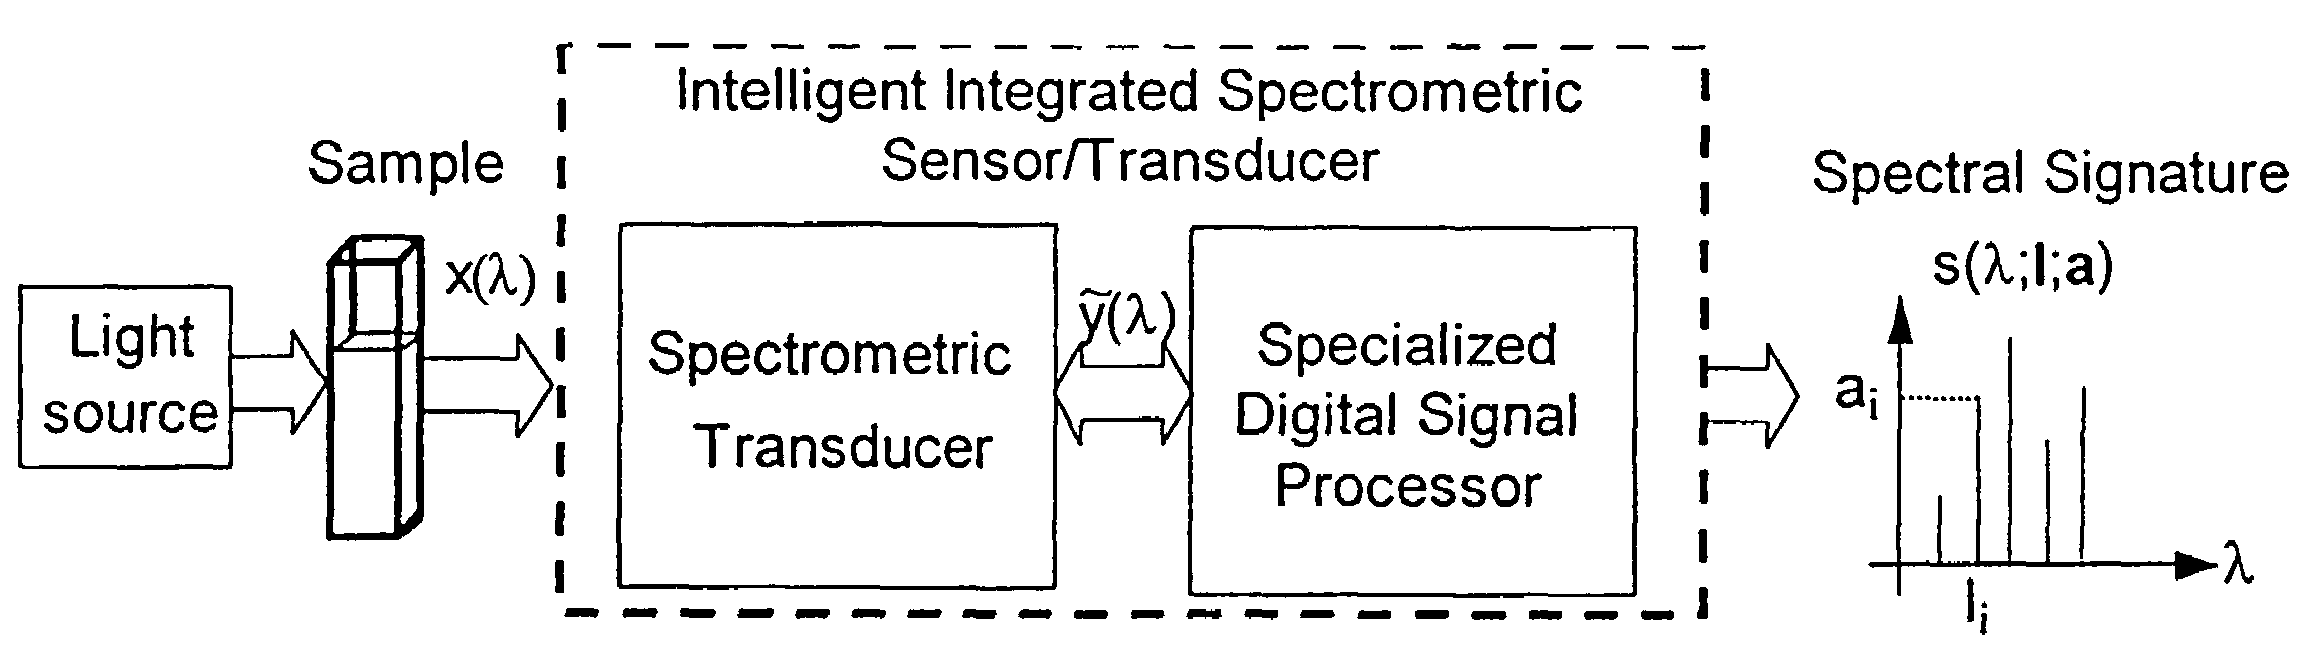 Apparatus and method for light spectrum measurement